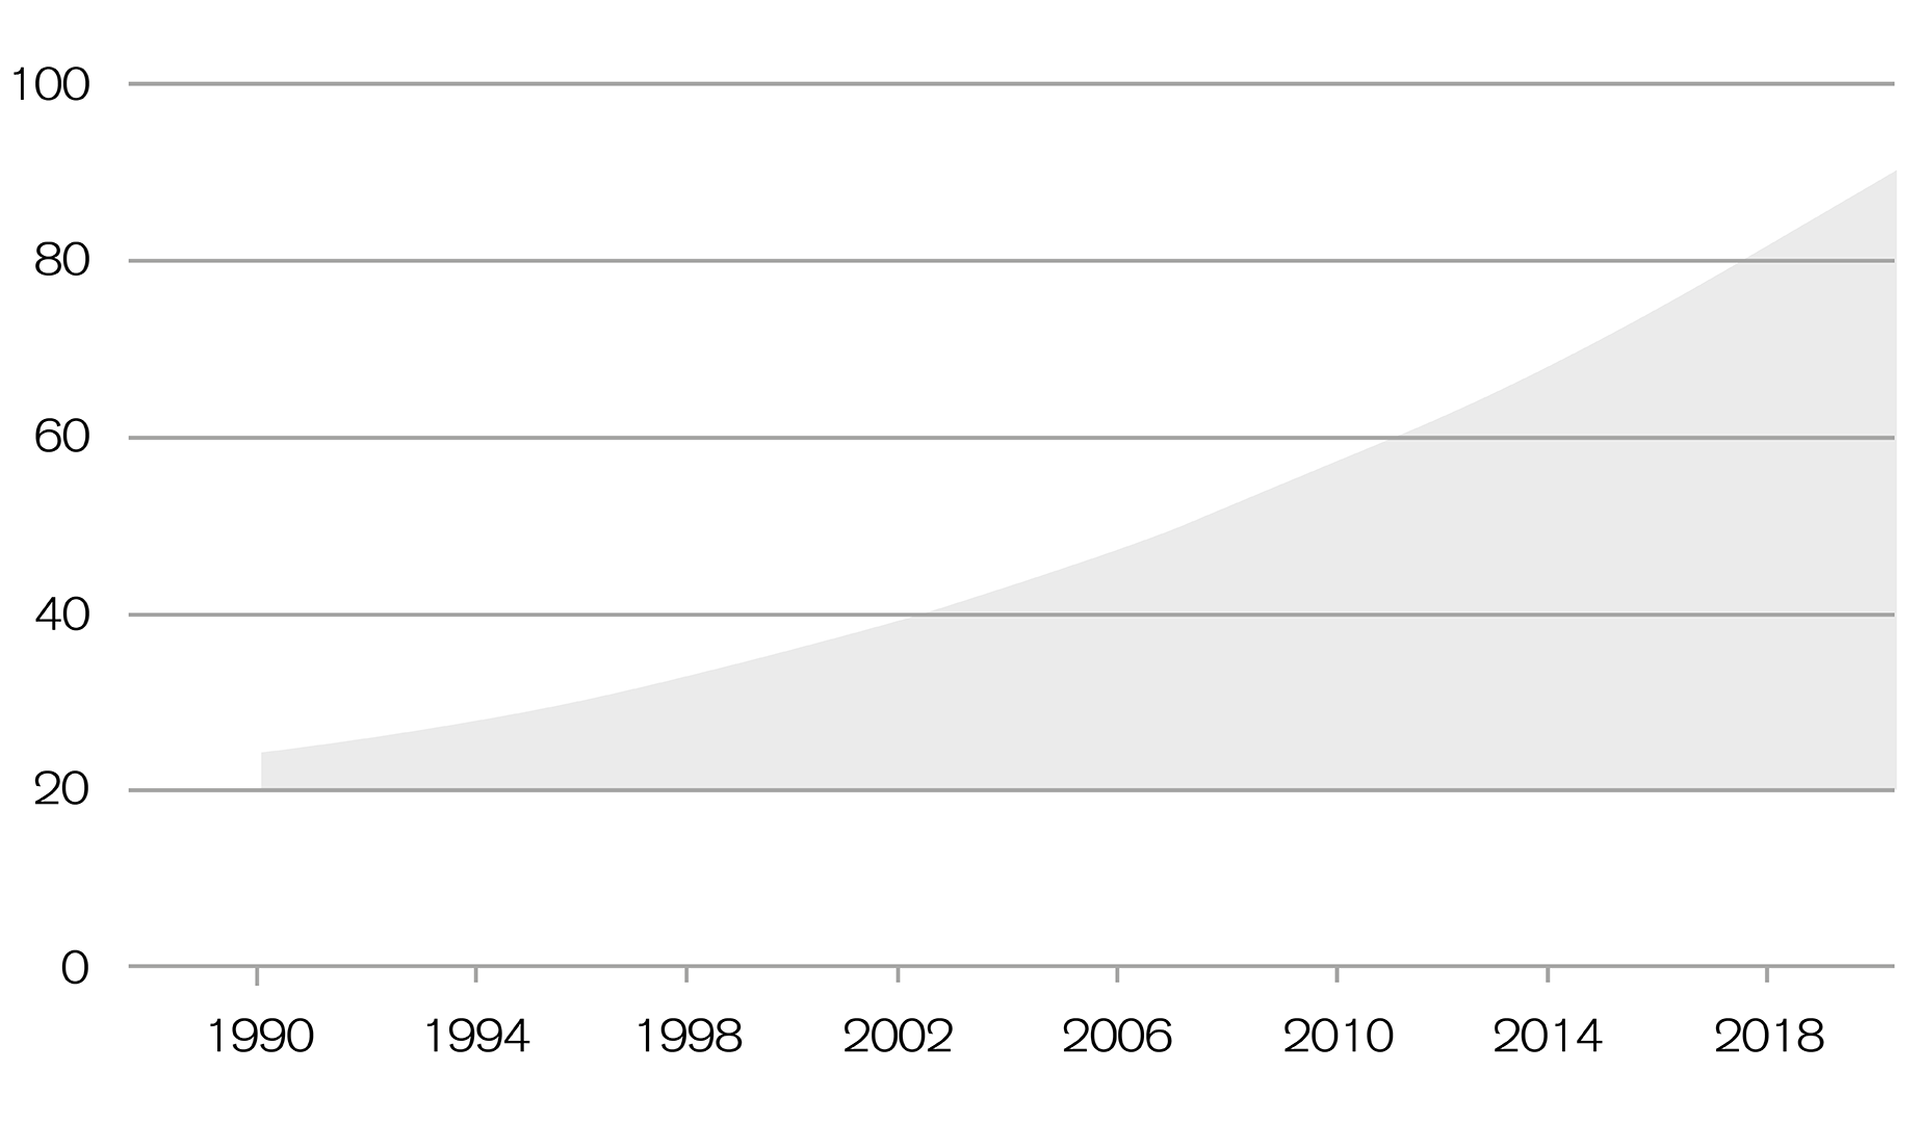 In Svizzera le eredità sono quintuplicate rispetto al 1990